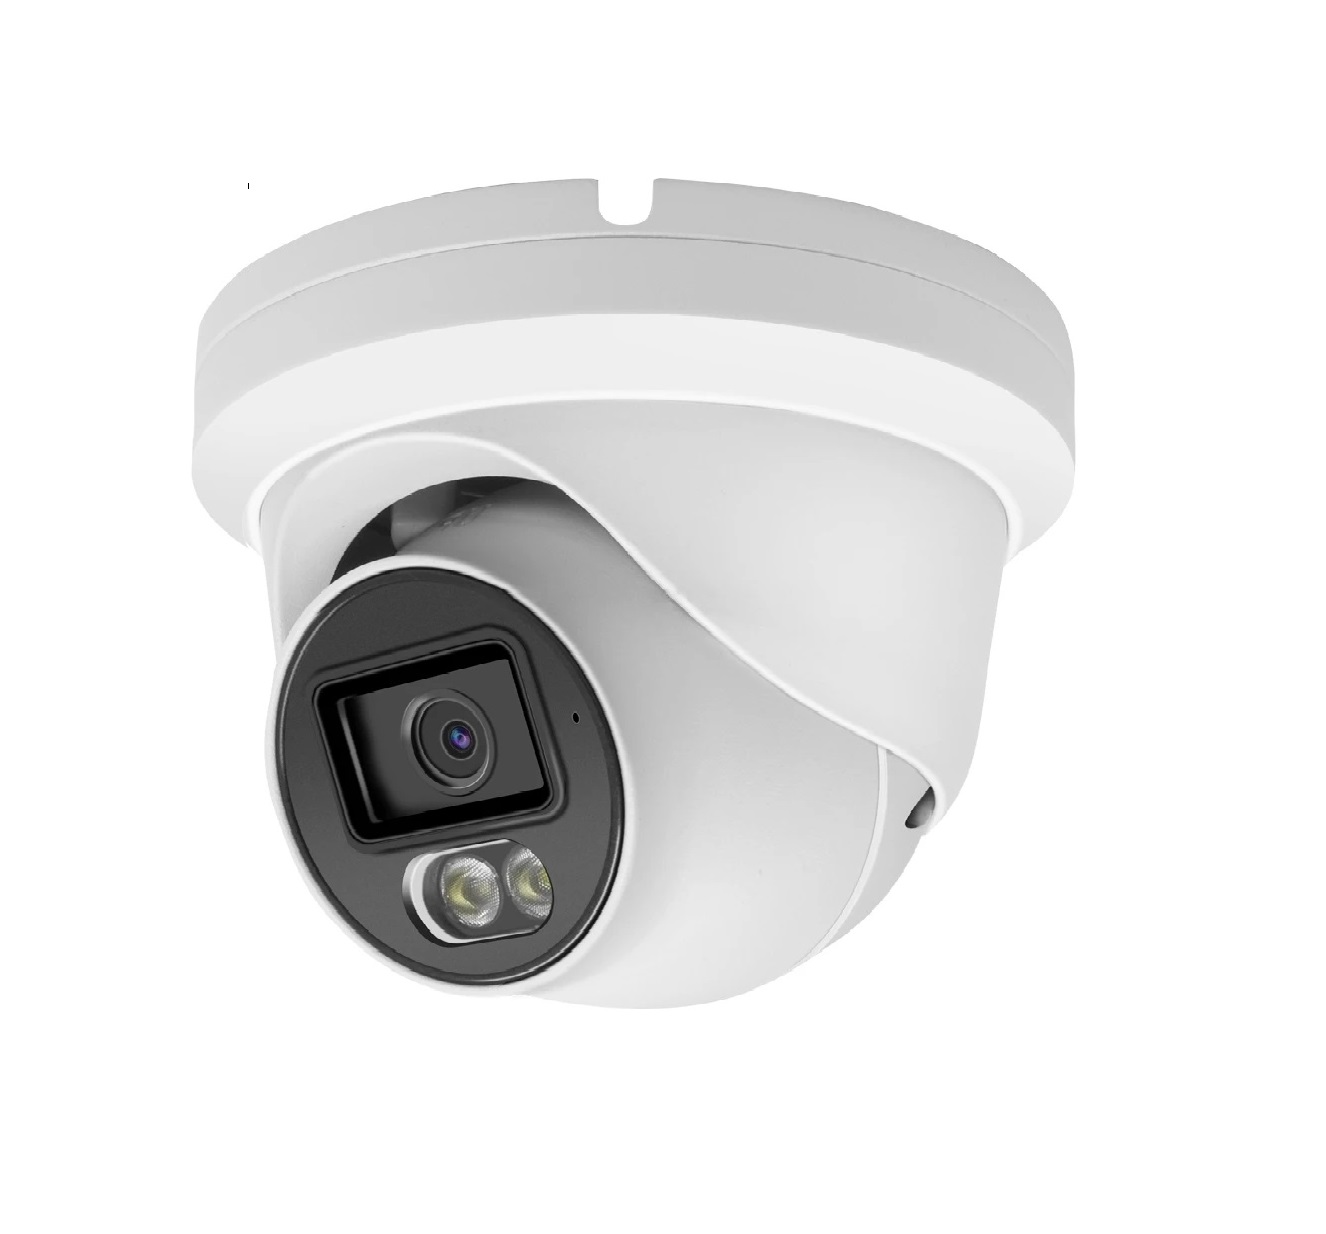 Venkovní IP kamera pro dohledový systém